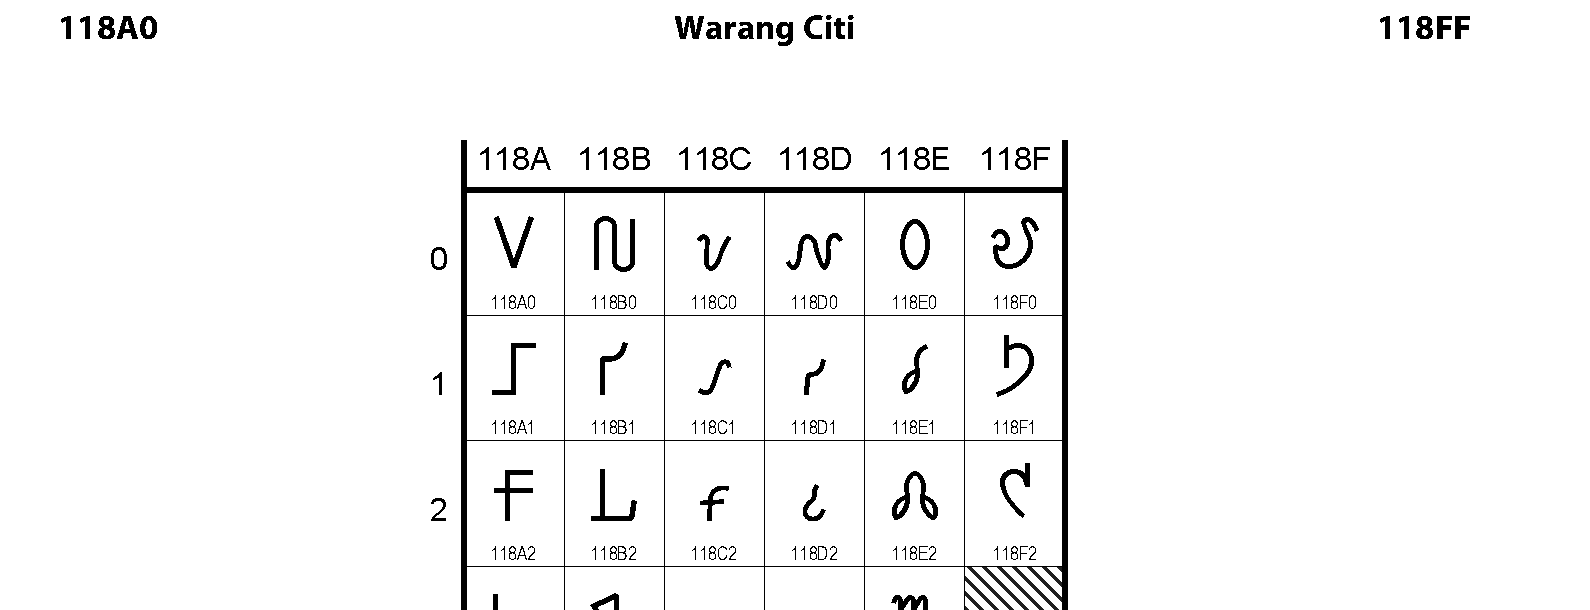 Unicode - Warang Citi